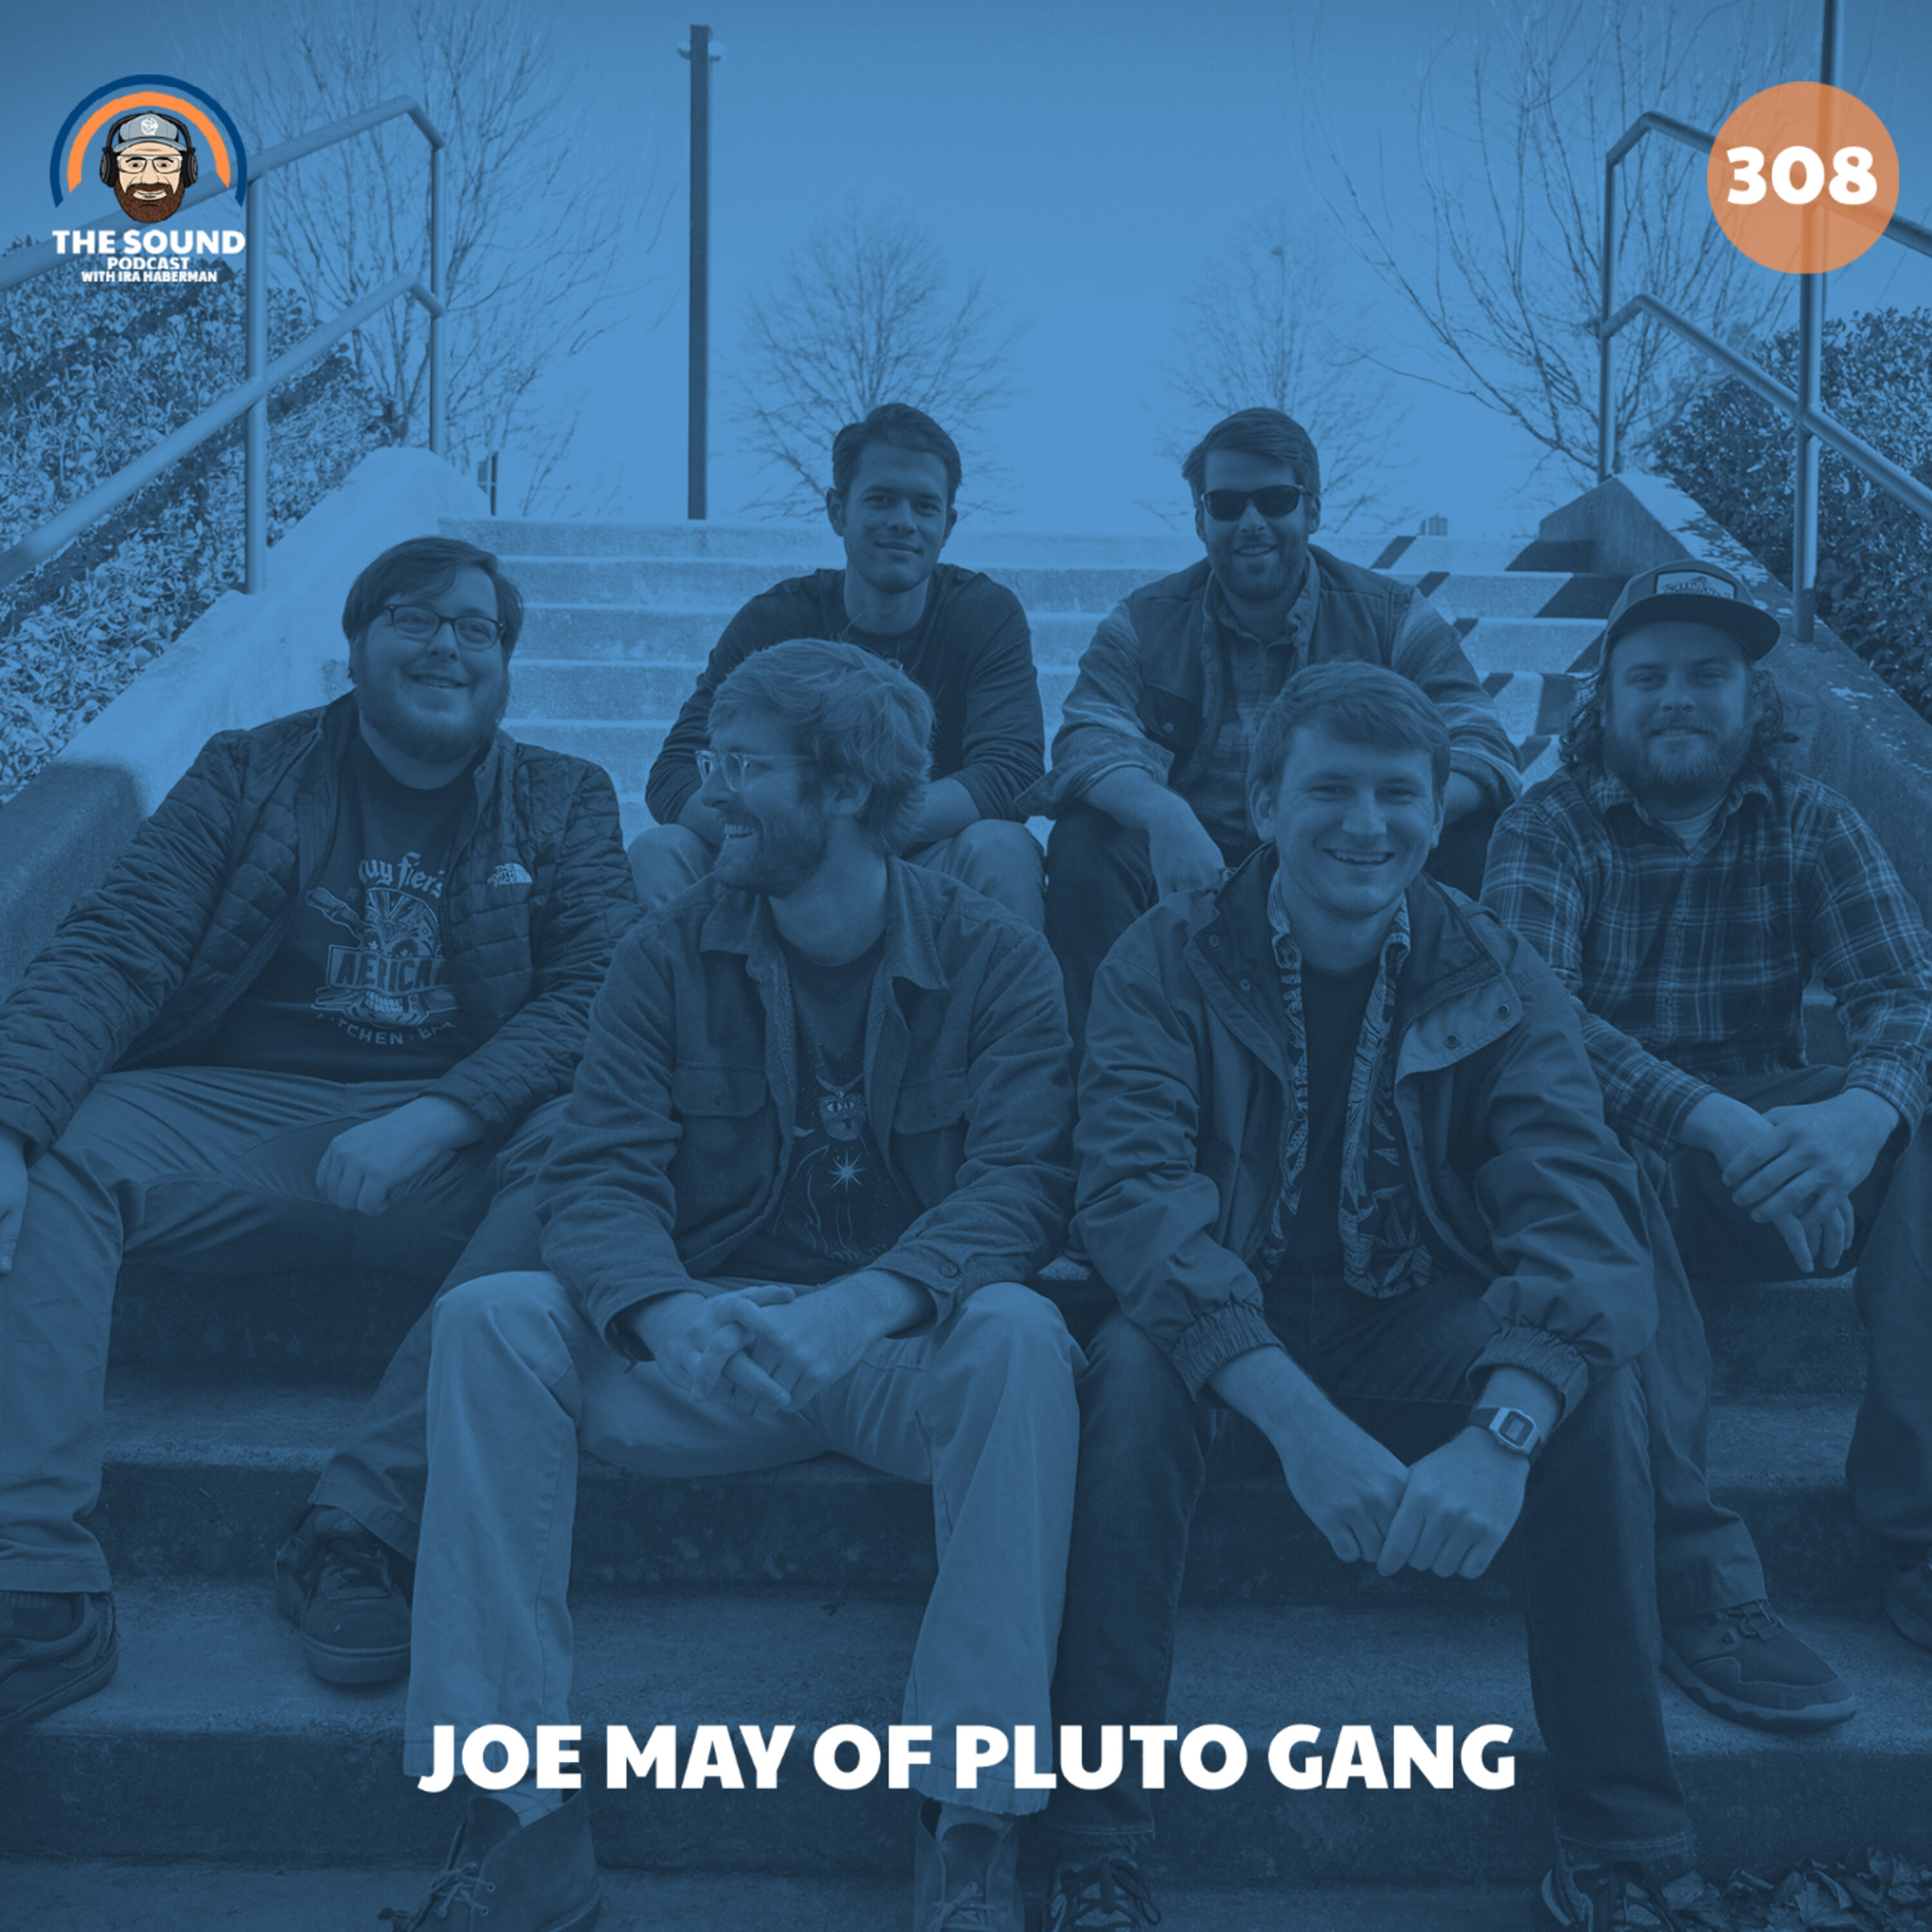 Joe May of Pluto Gang Image